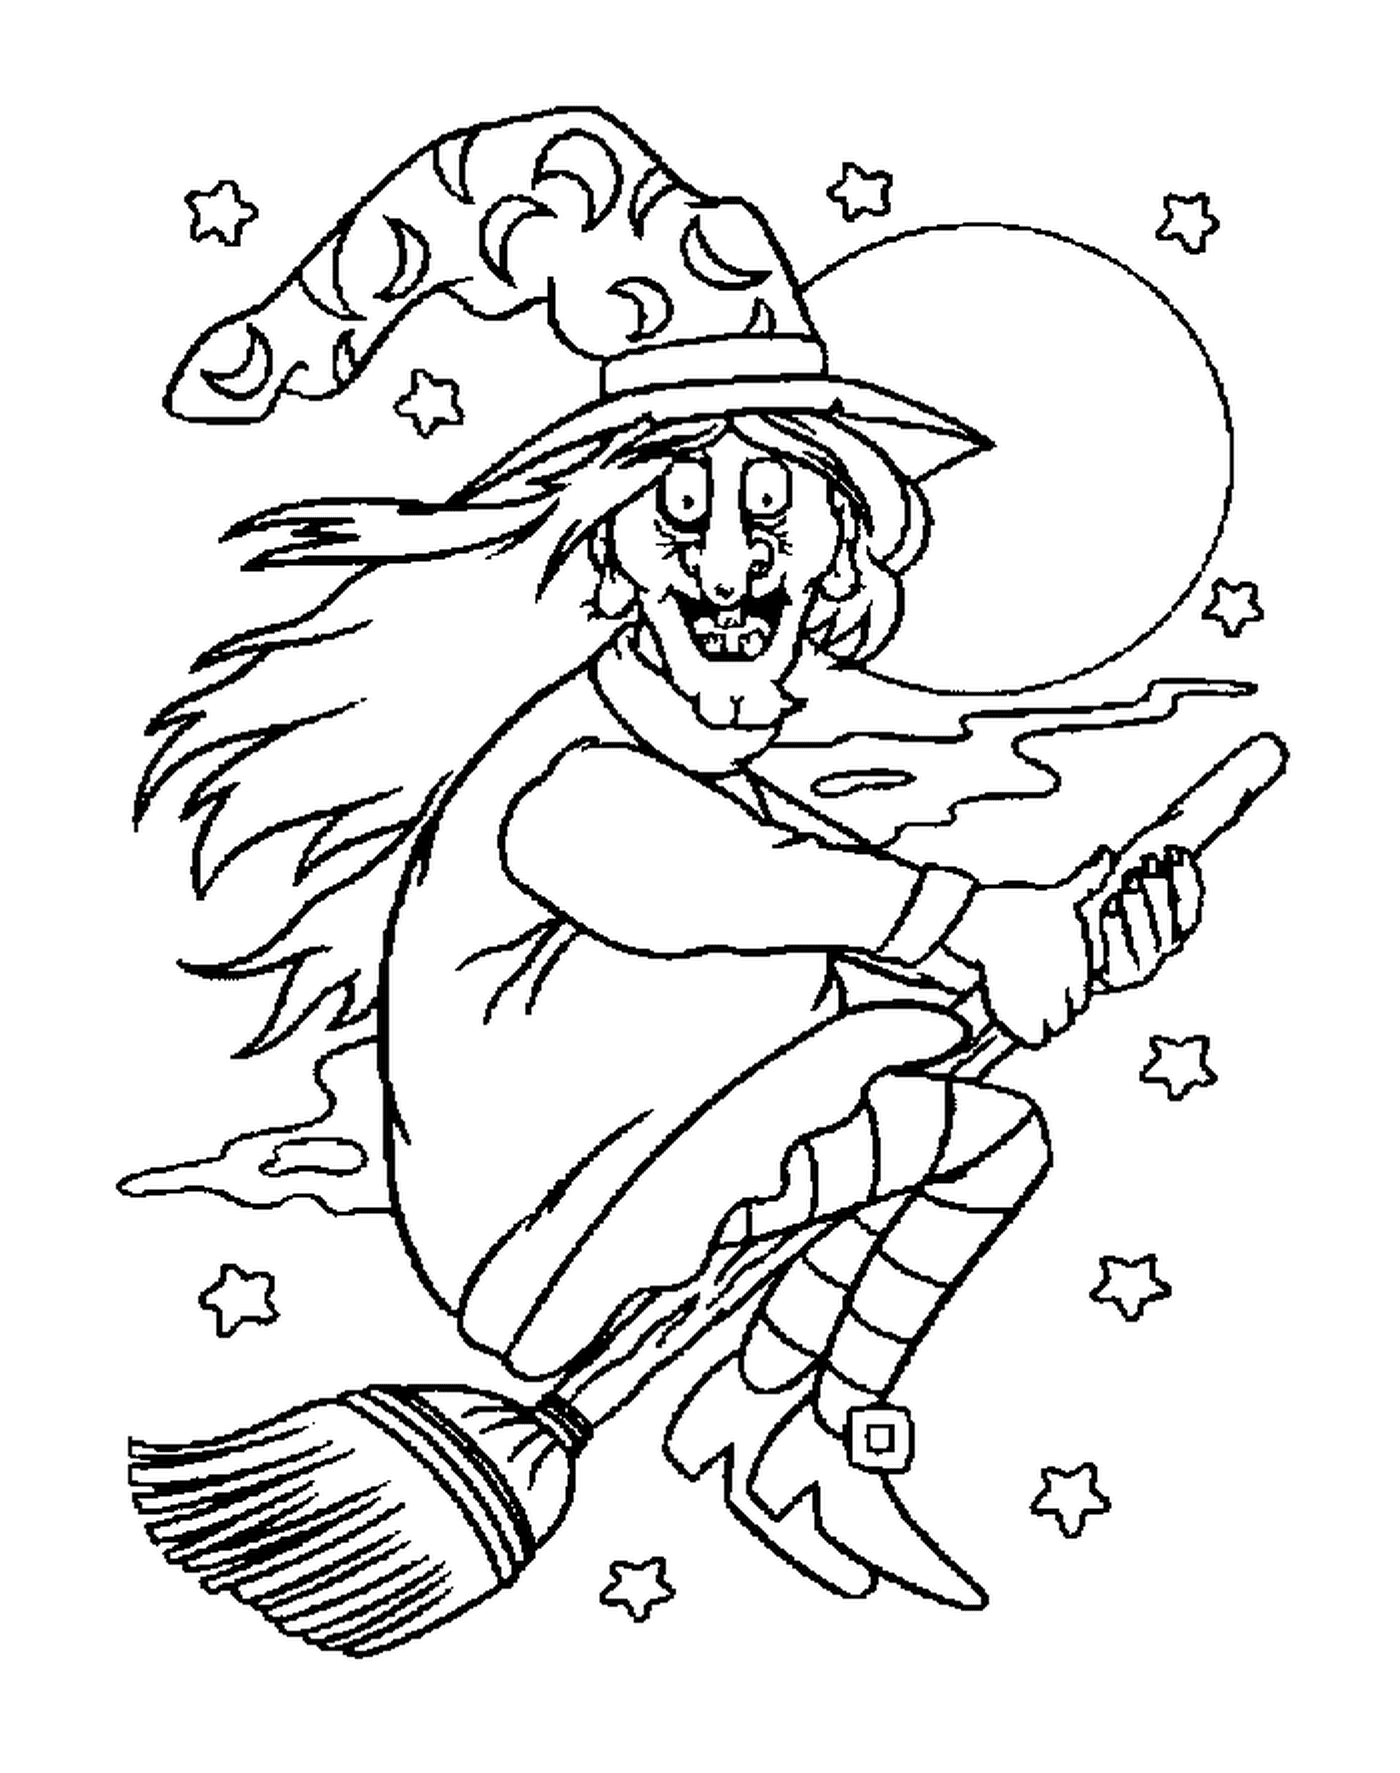  Bruxa voando em sua vassoura em uma noite estrelada 